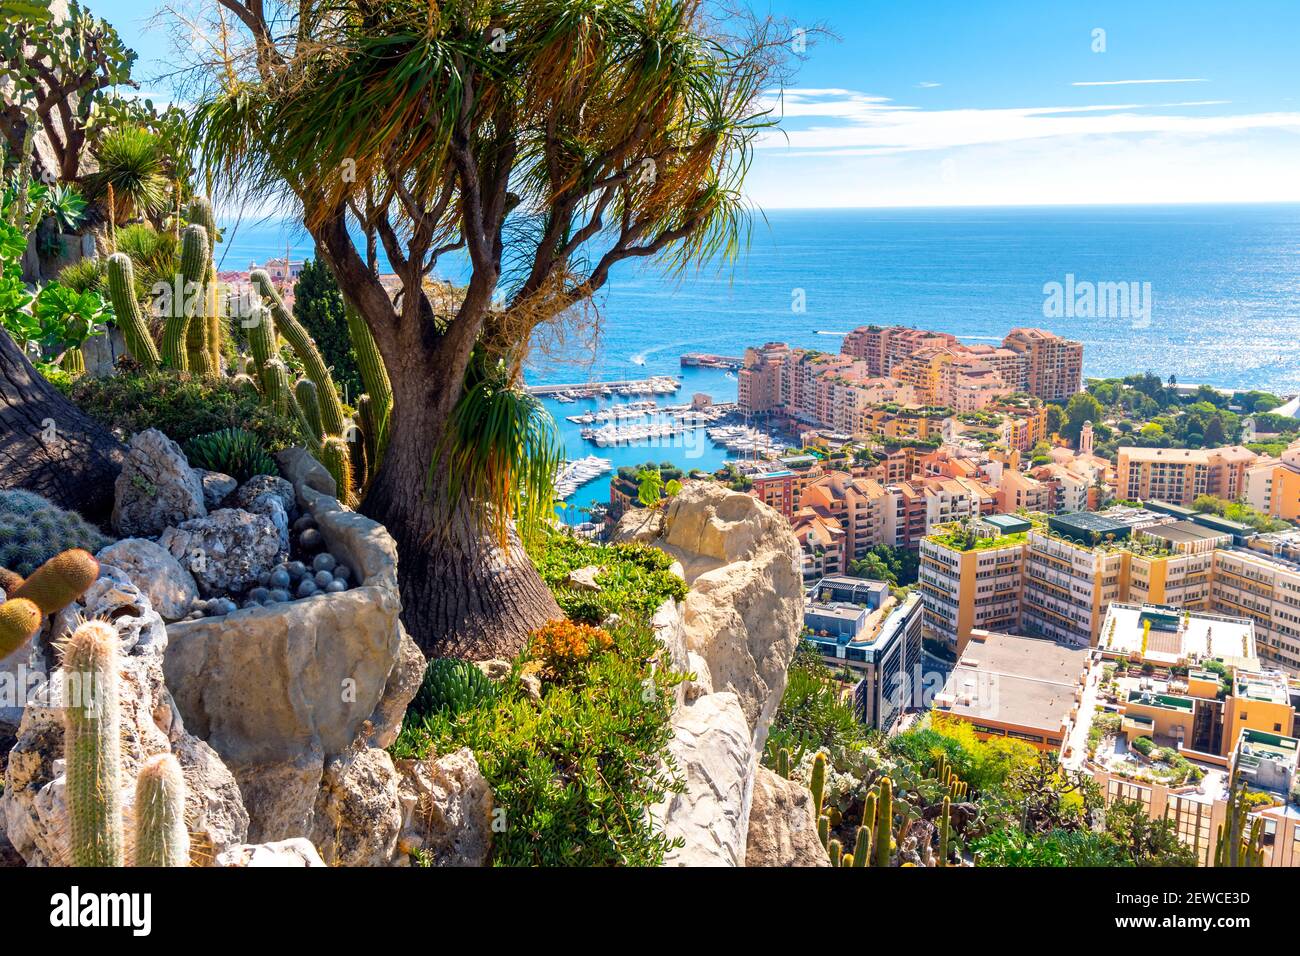 Blick von den exotischen Gärten am Hang des Mittelmeers und der Stadt Monte Carlo, Monaco. Stockfoto